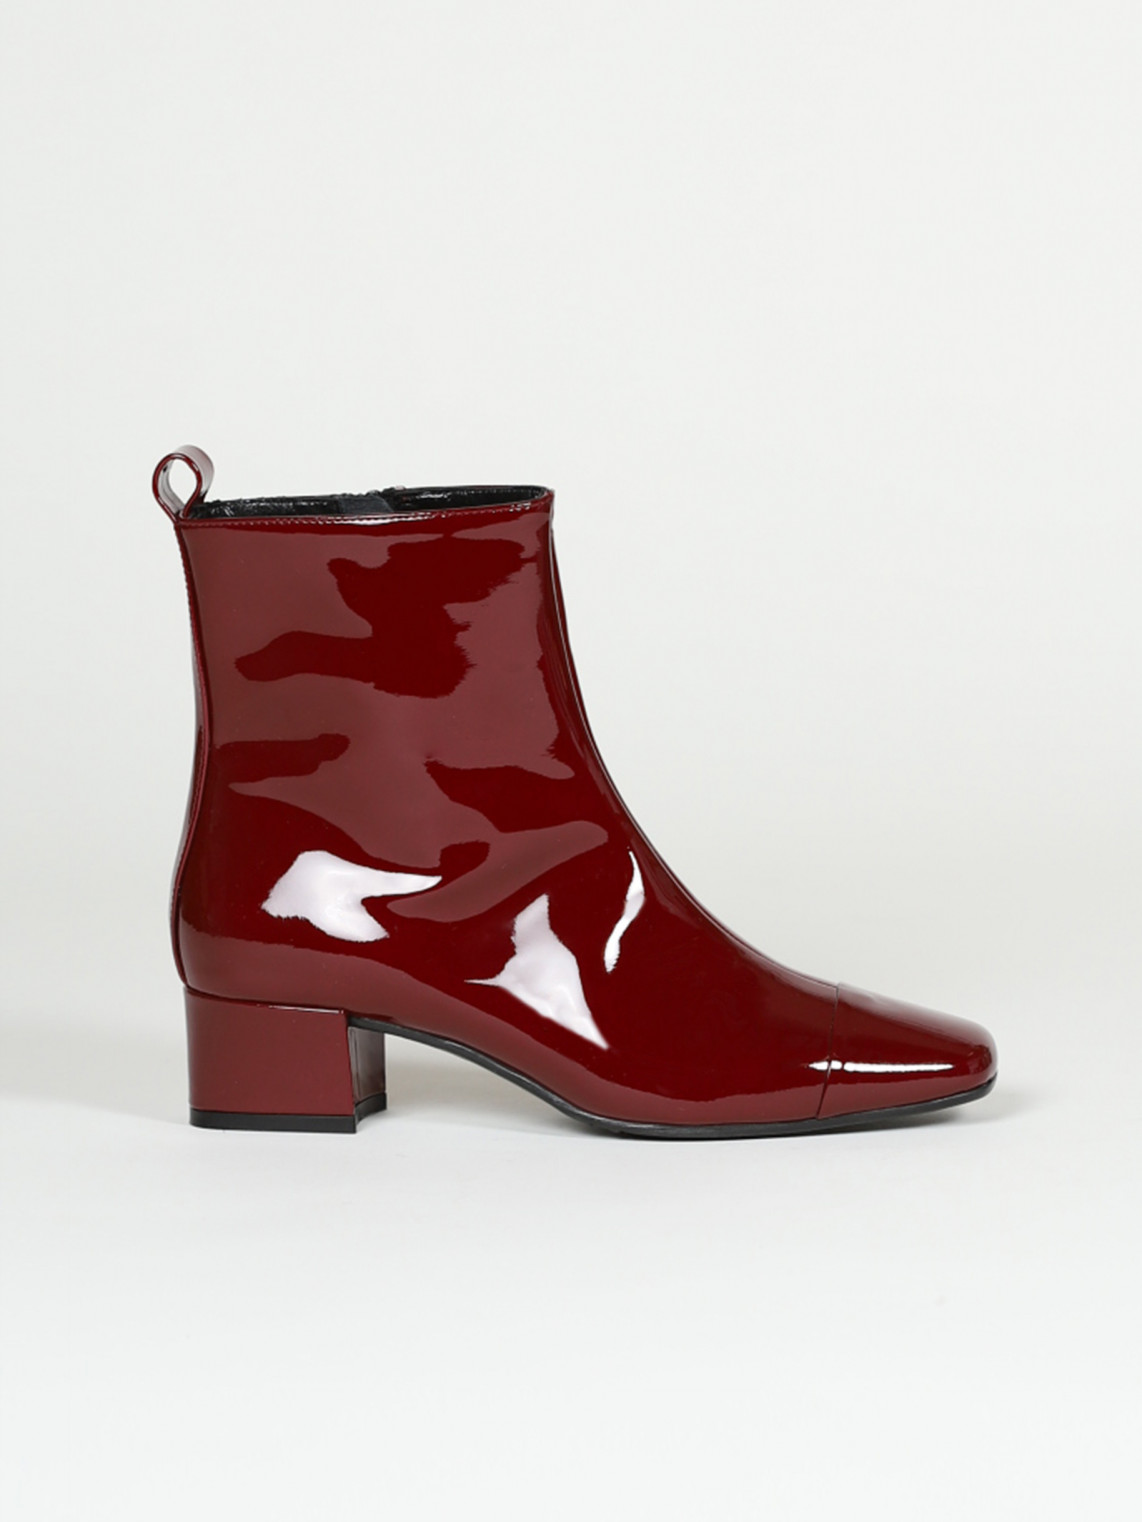 ESTIME burgundy patent leather ankle boots | Carel Paris Shoes